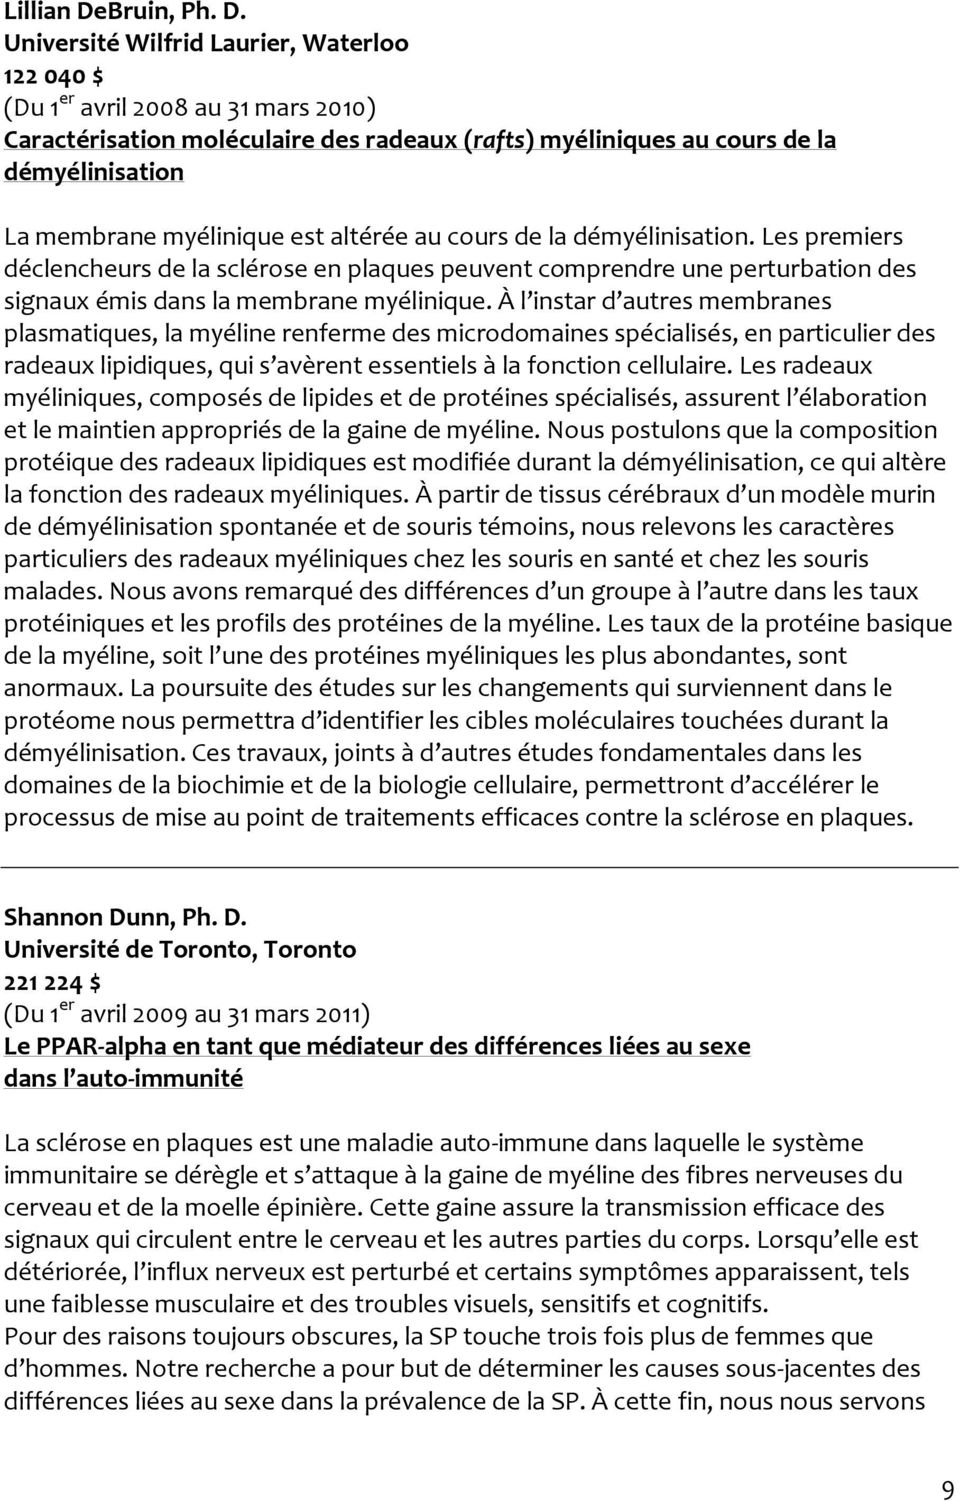 Université Wilfrid Laurier, Waterloo 122 040 $ (Du 1 er avril 2008 au 31 mars 2010) Caractérisation moléculaire des radeaux (rafts) myéliniques au cours de la démyélinisation La membrane myélinique